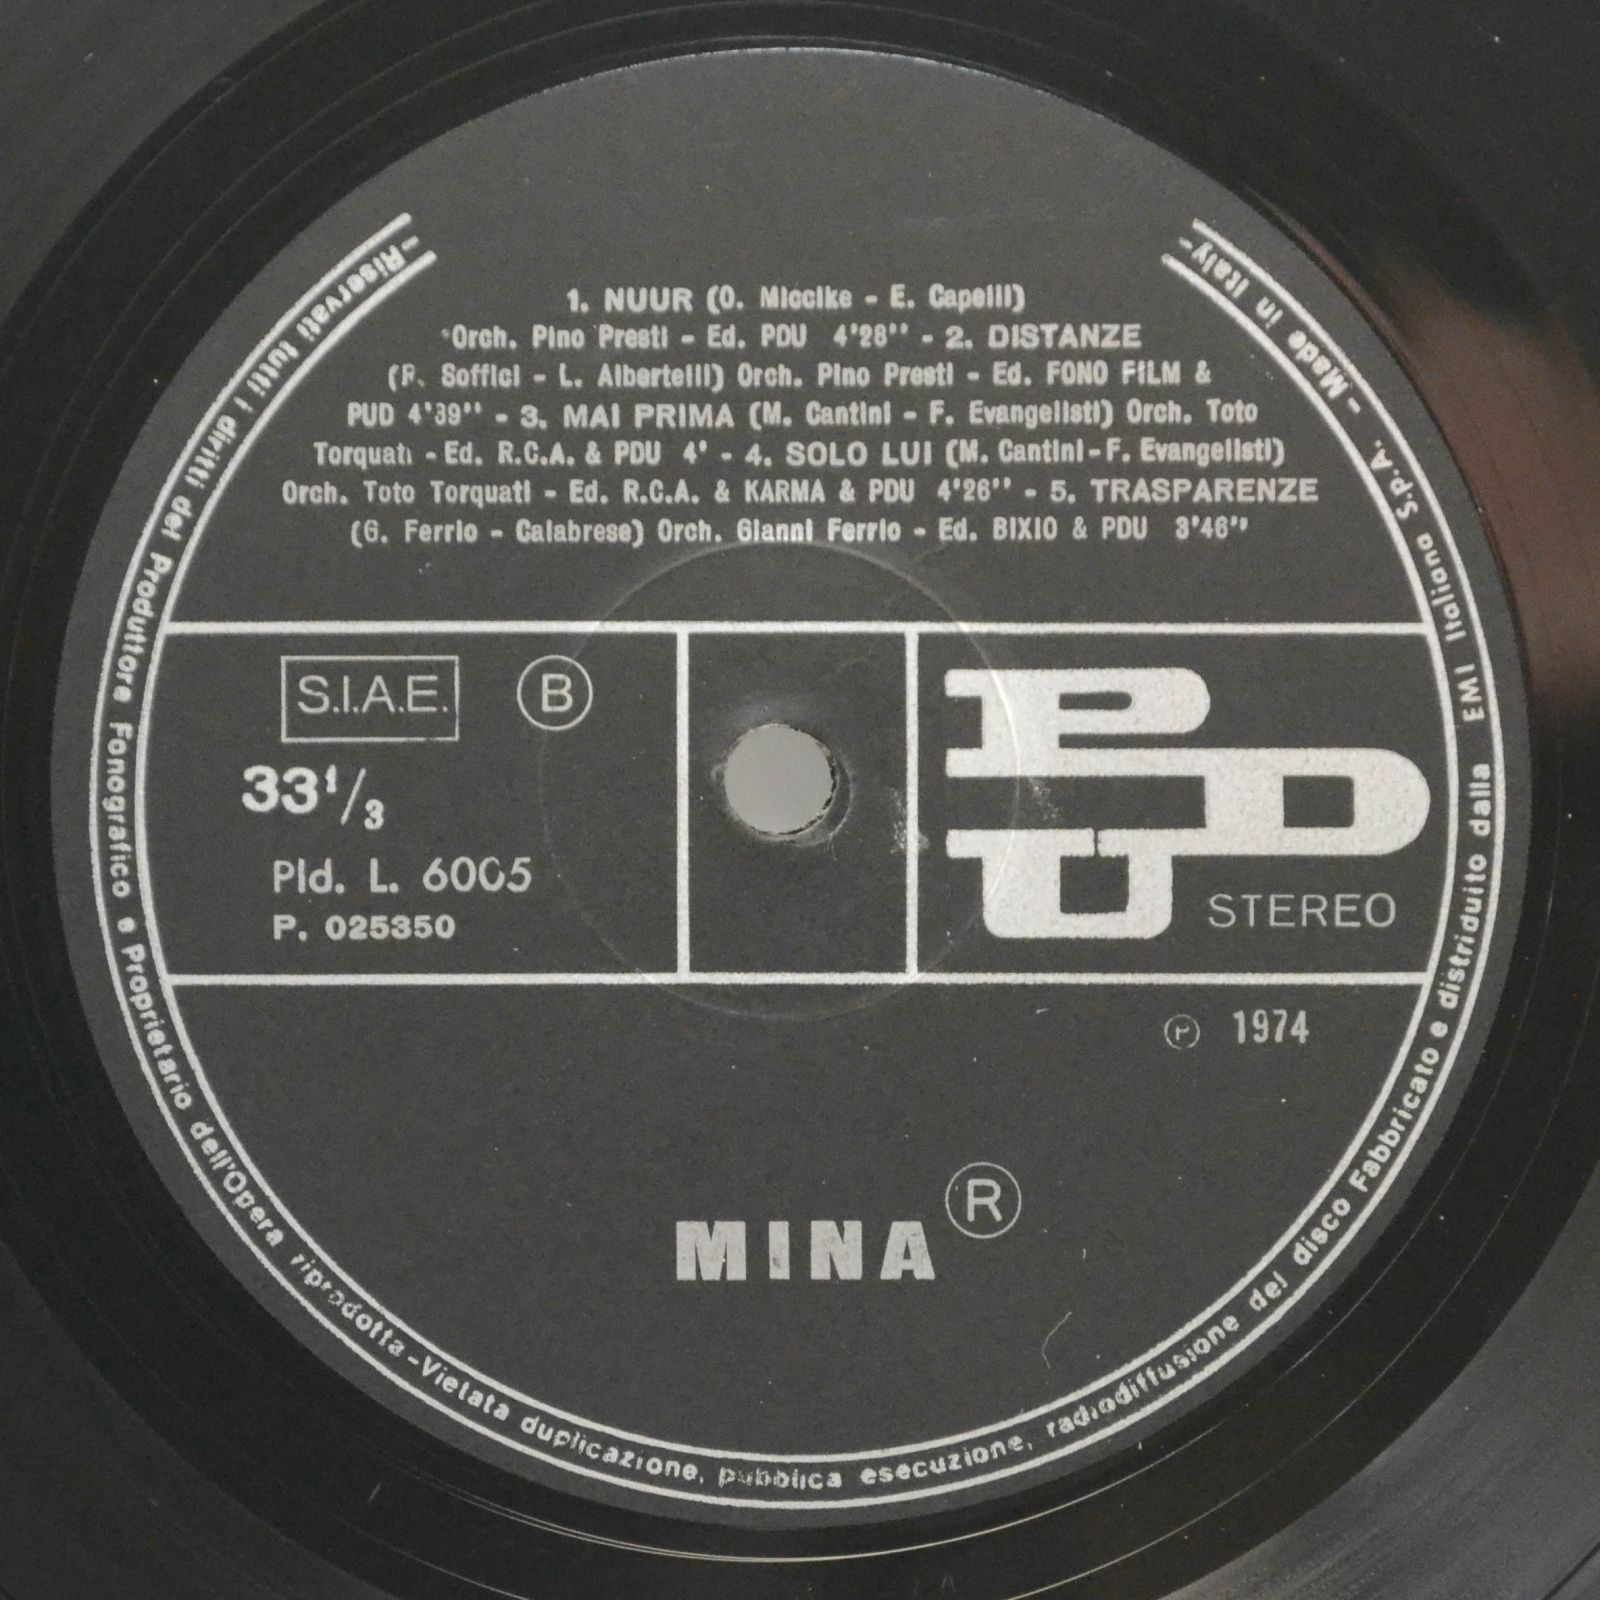 Mina — Mina® (1-st, Italy), 1974